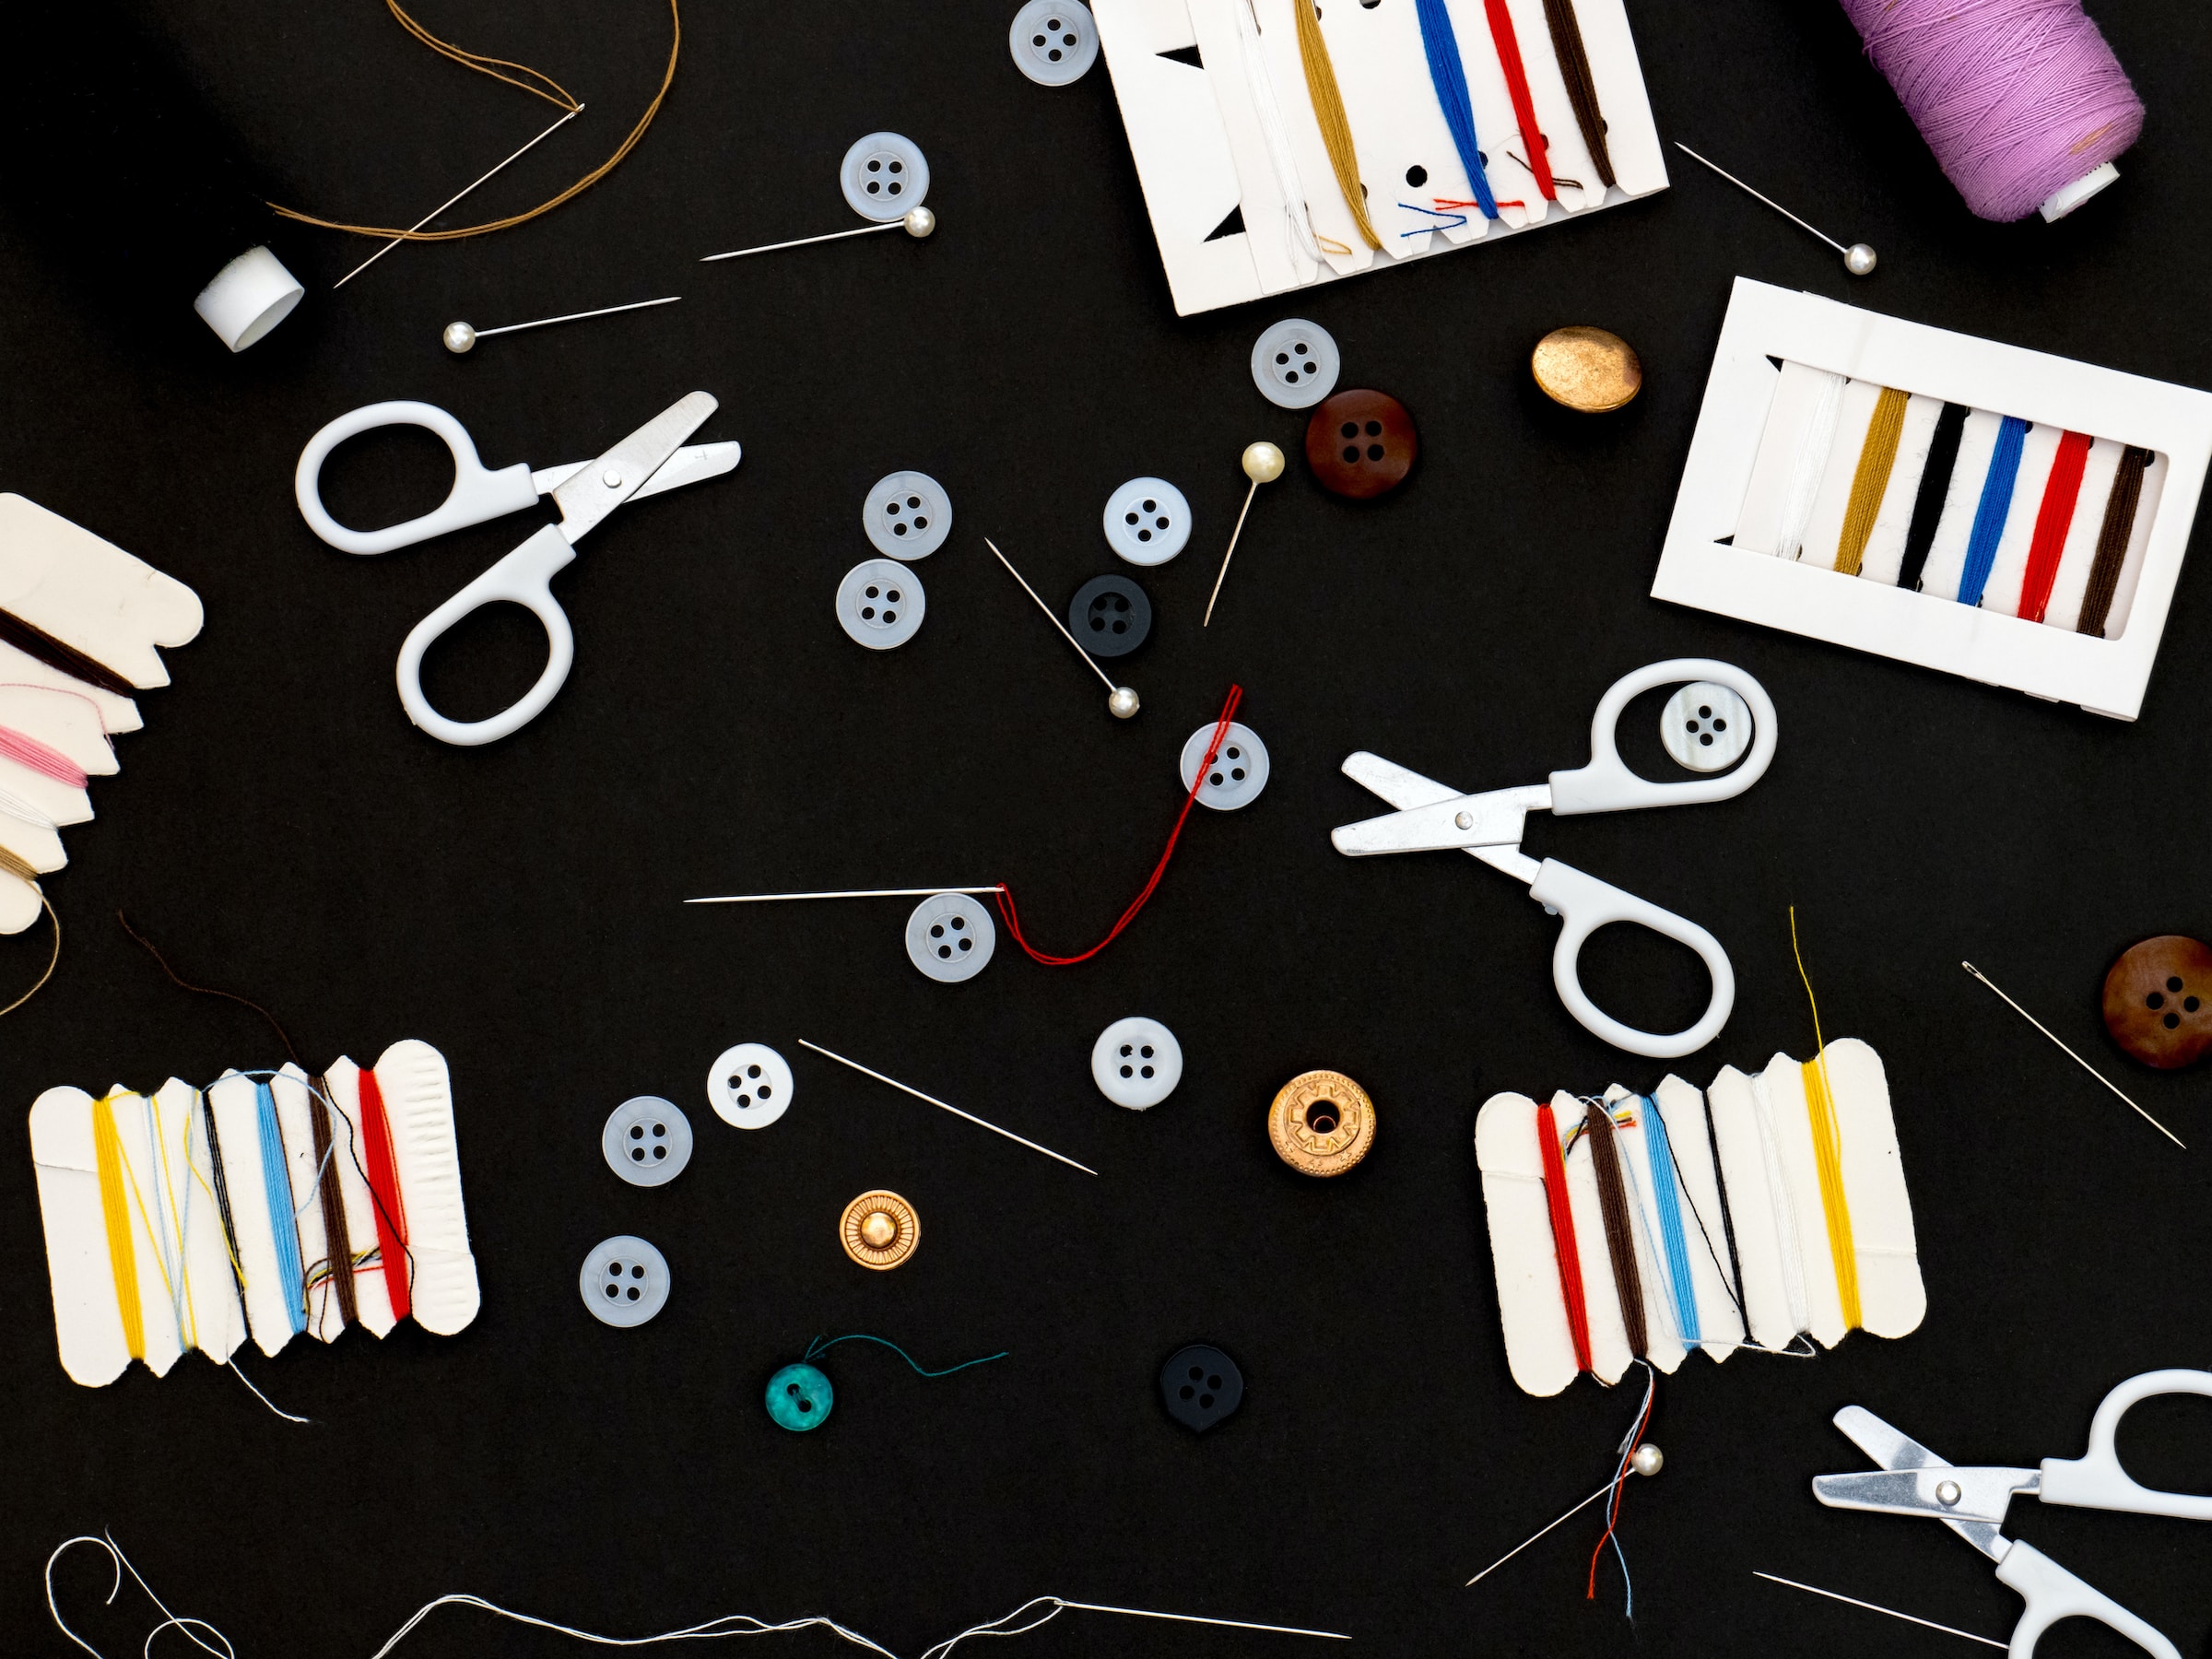 Materiali e strumenti per riparare abiti: forbici, filo, bottoni e aghi